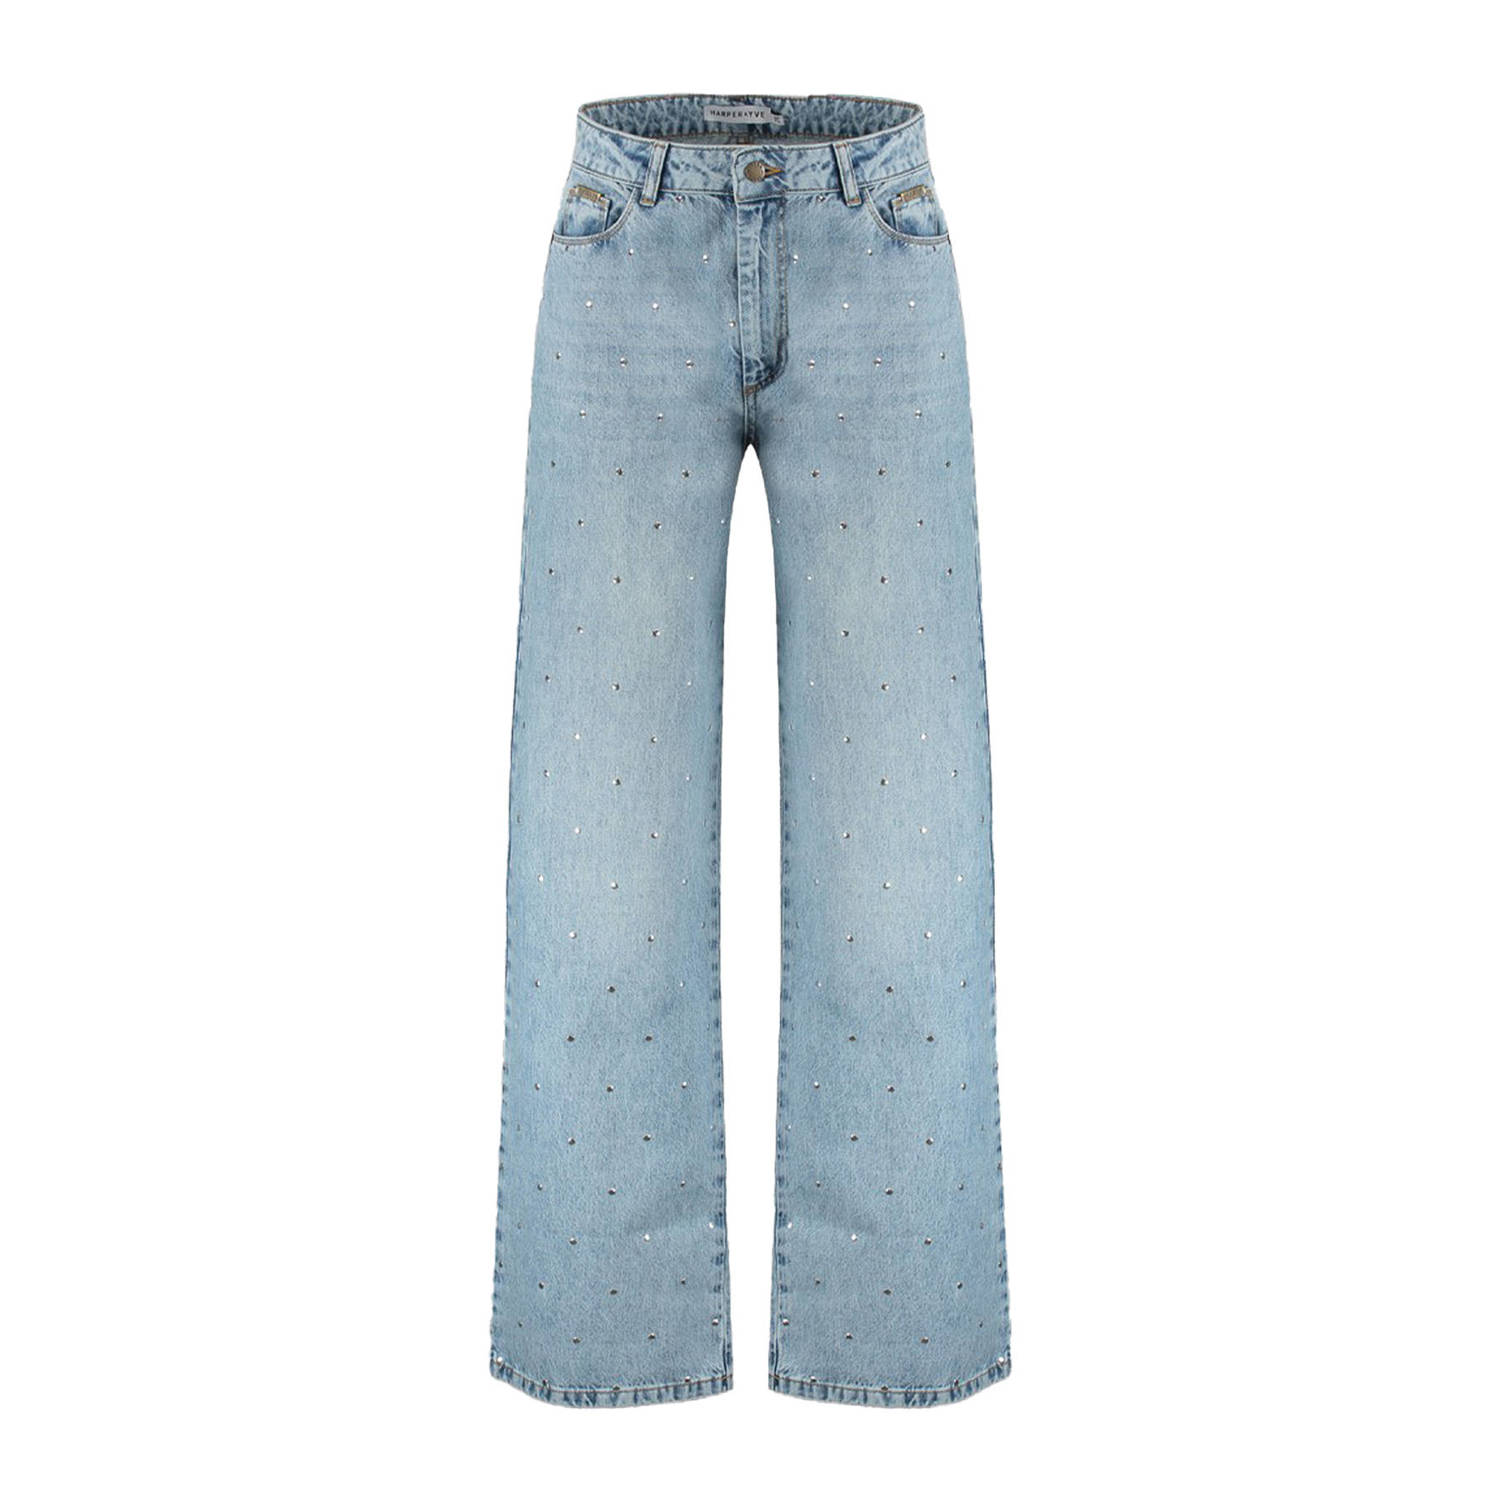 HARPER & YVE high waist straight jeans Yve light blue denim